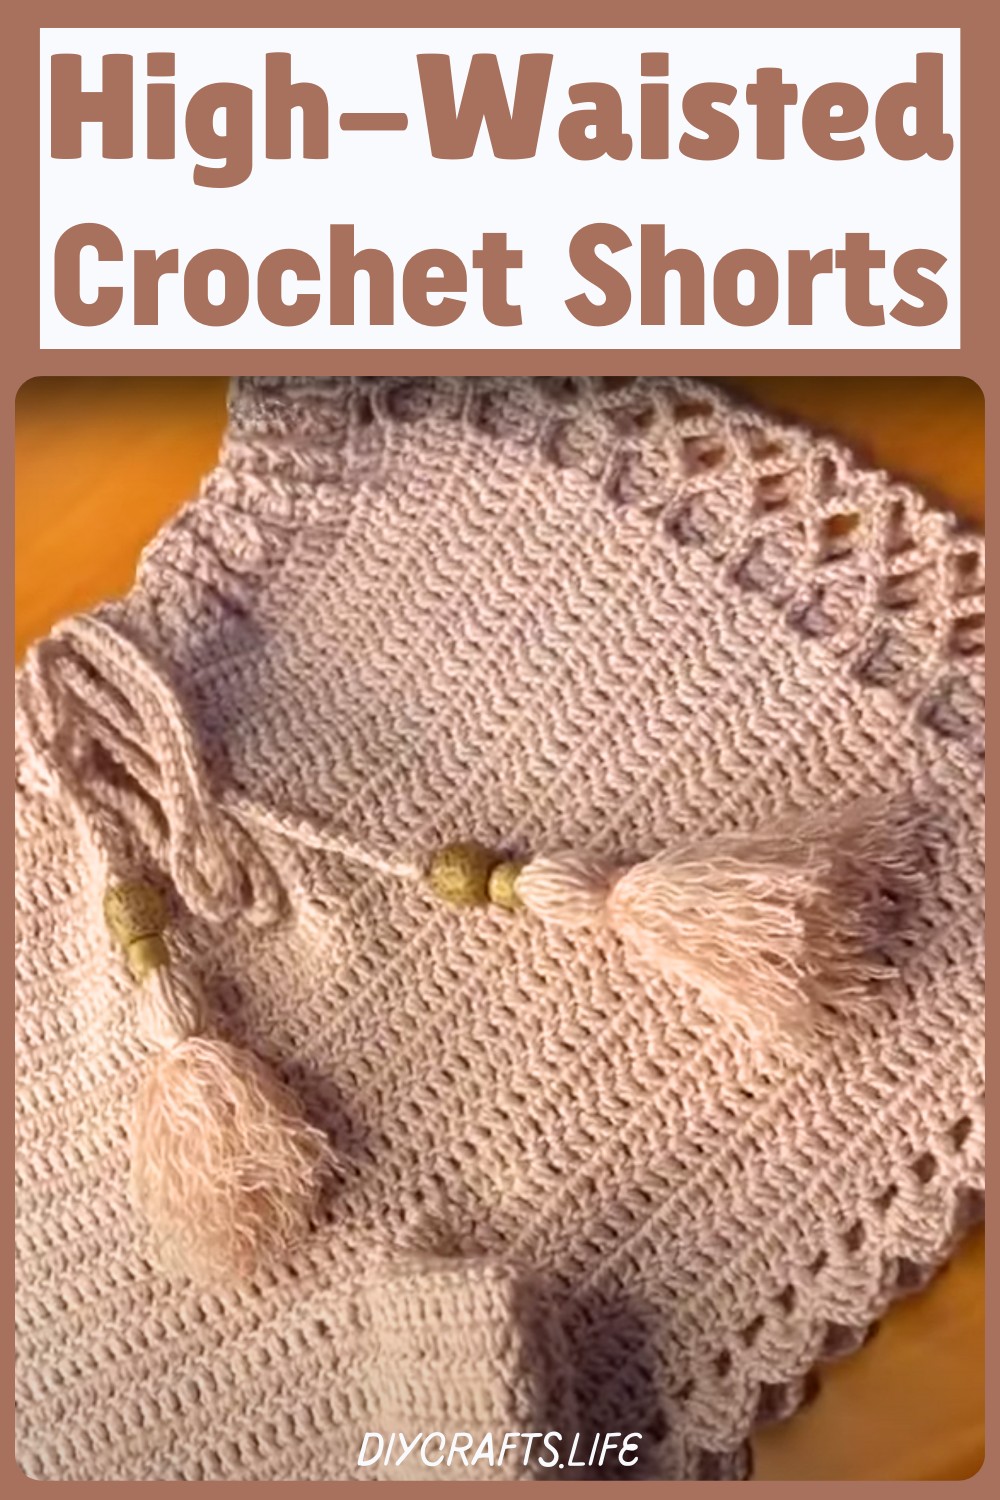 High-Waisted Crochet Shorts